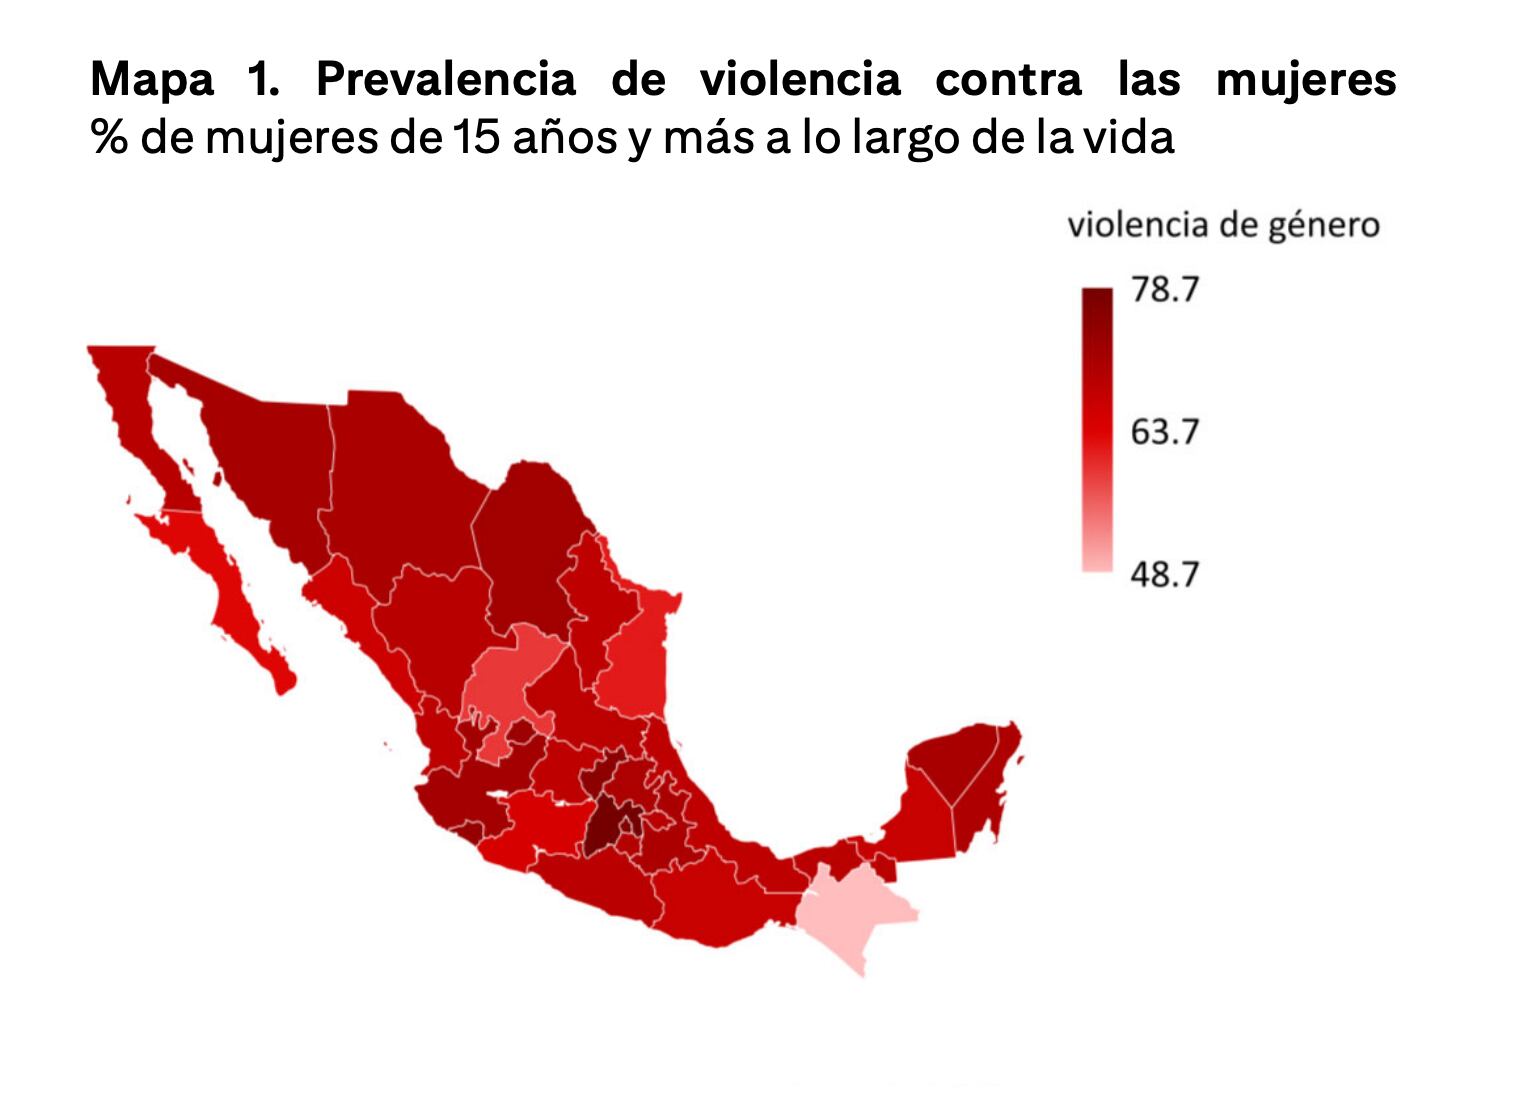 Citibanamex alerta sobre violencia de género contra la mujer en México